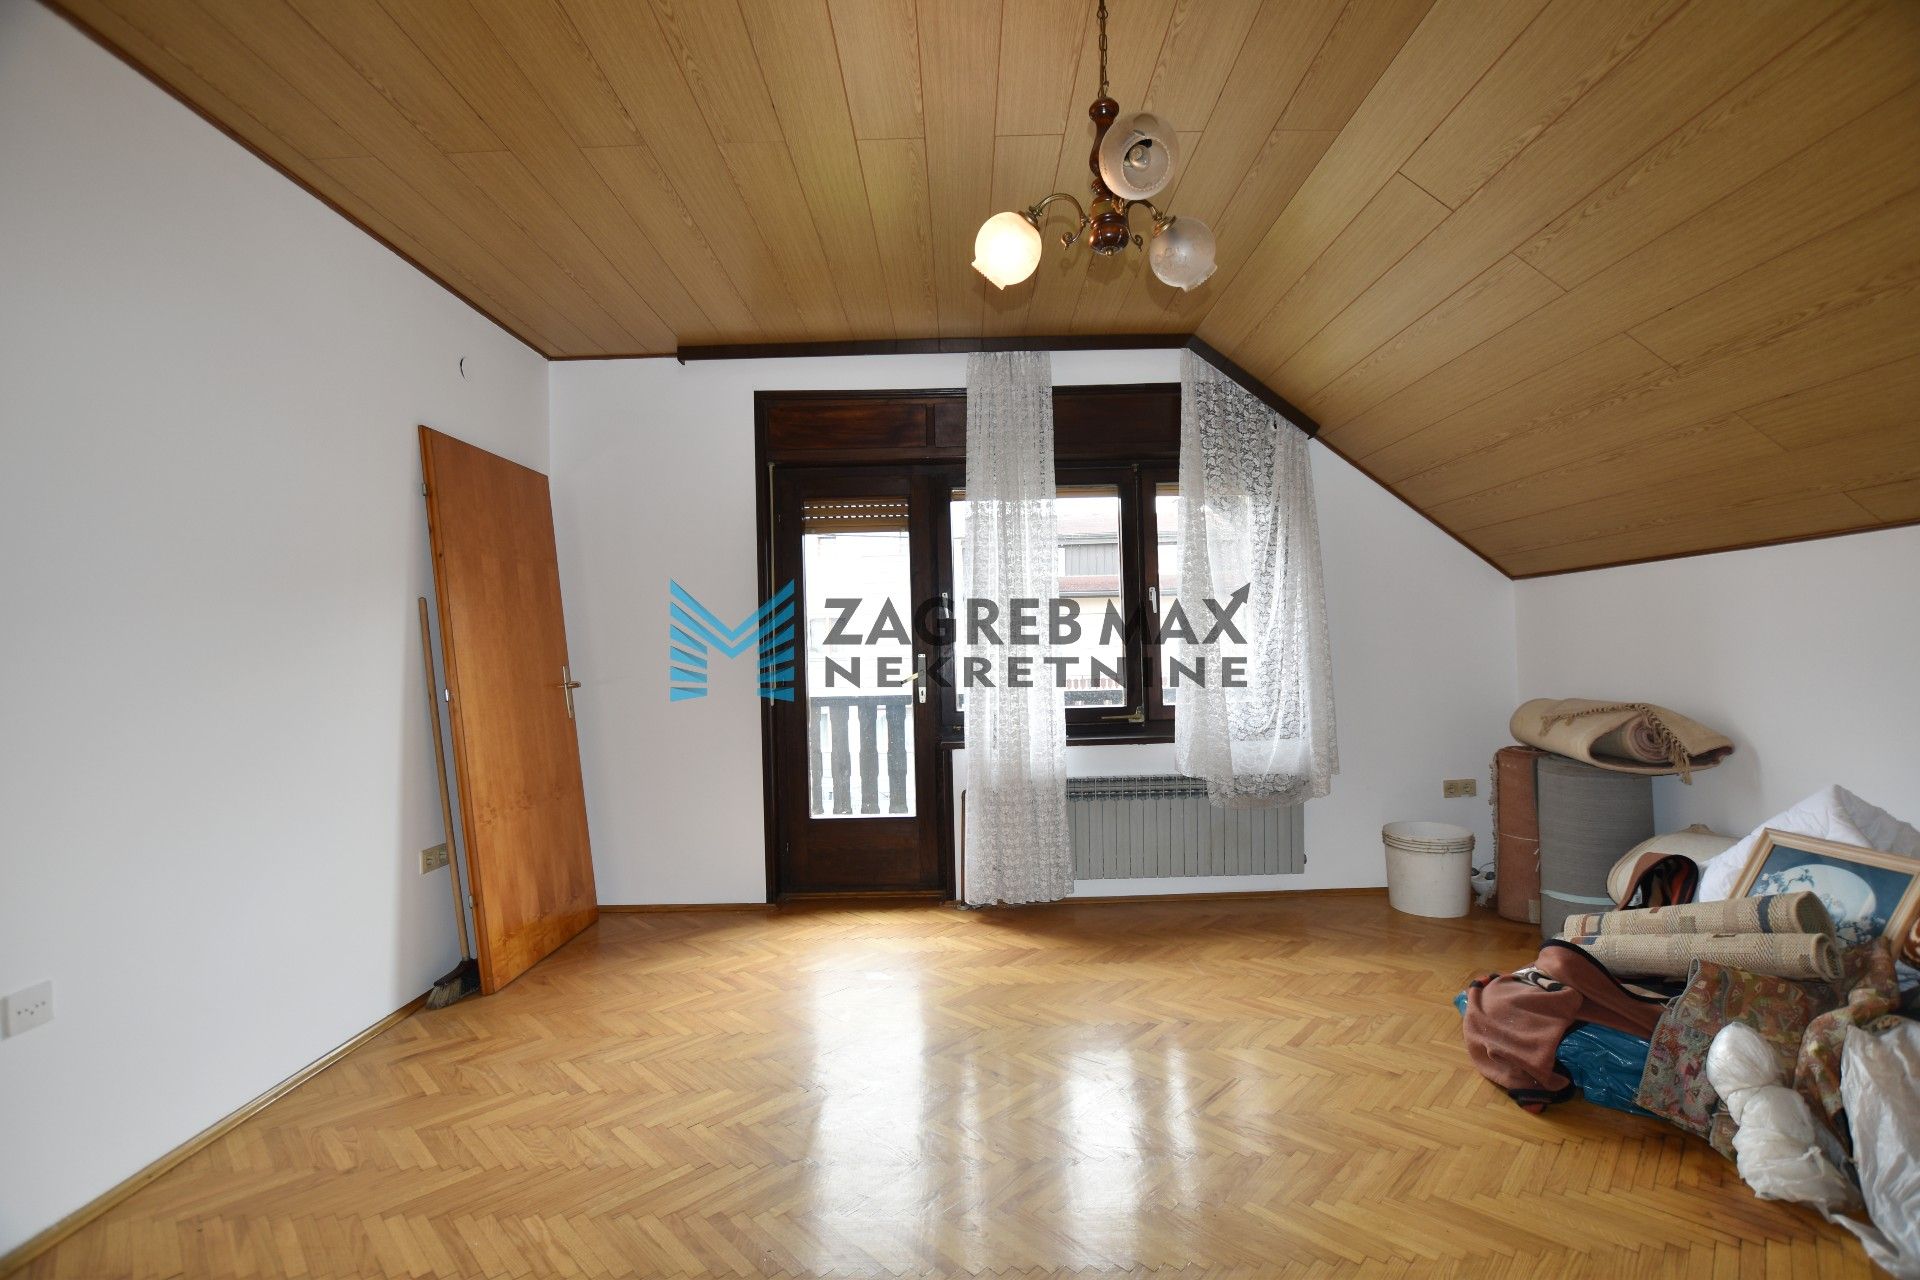 Zagreb - NAJAM - KUSTOŠIJA Obiteljska kuća 180 m2, 2 odvojena stana i podrum, parking